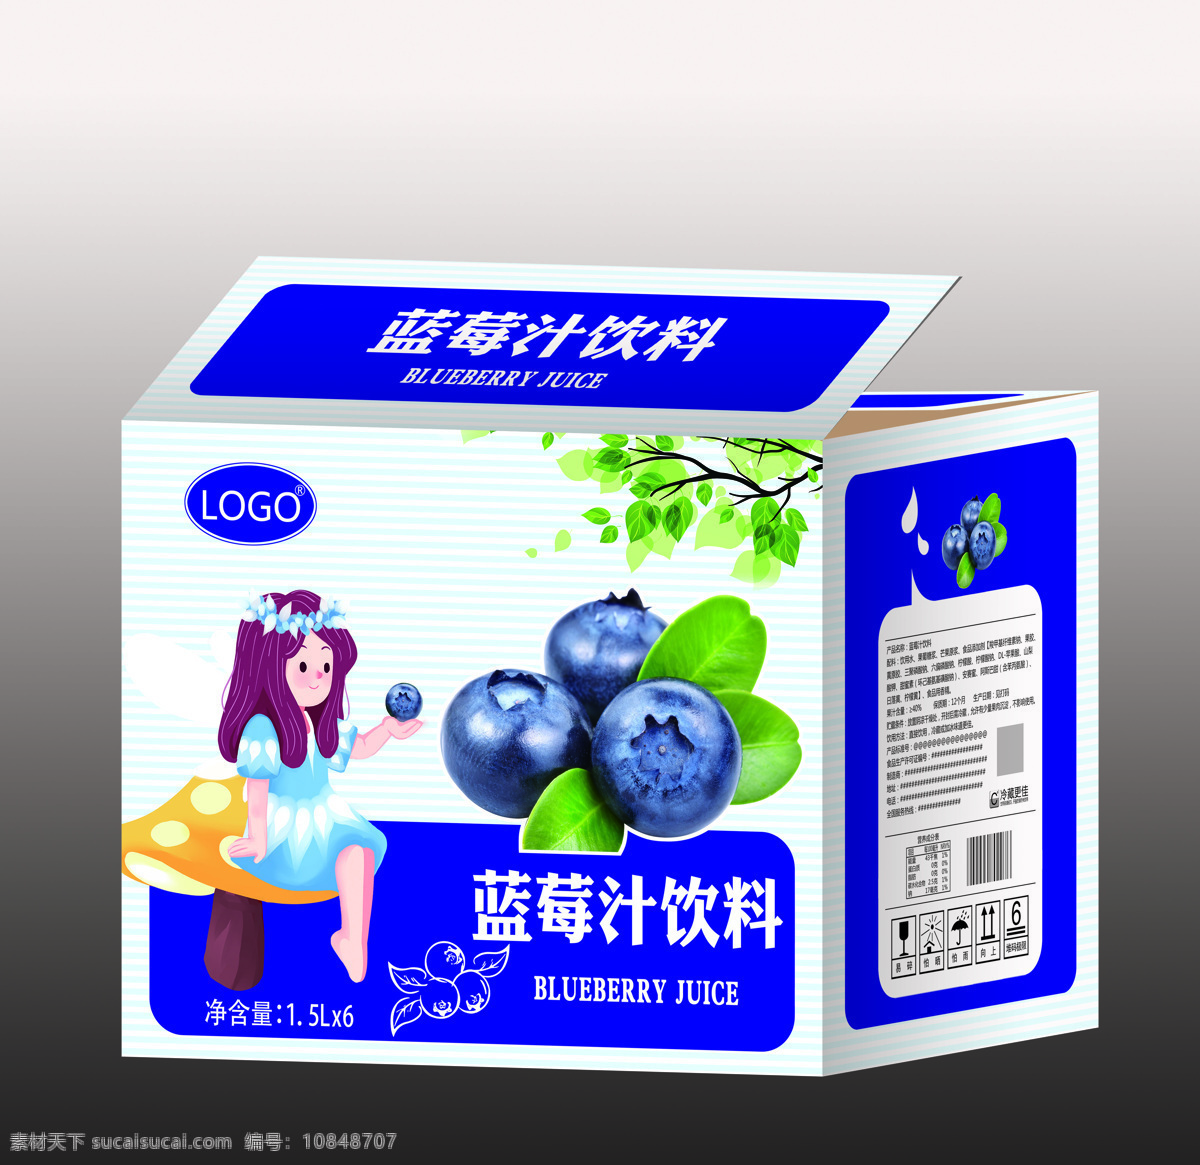 蓝莓汁 果汁 效果 效果图 箱效果 果汁包装